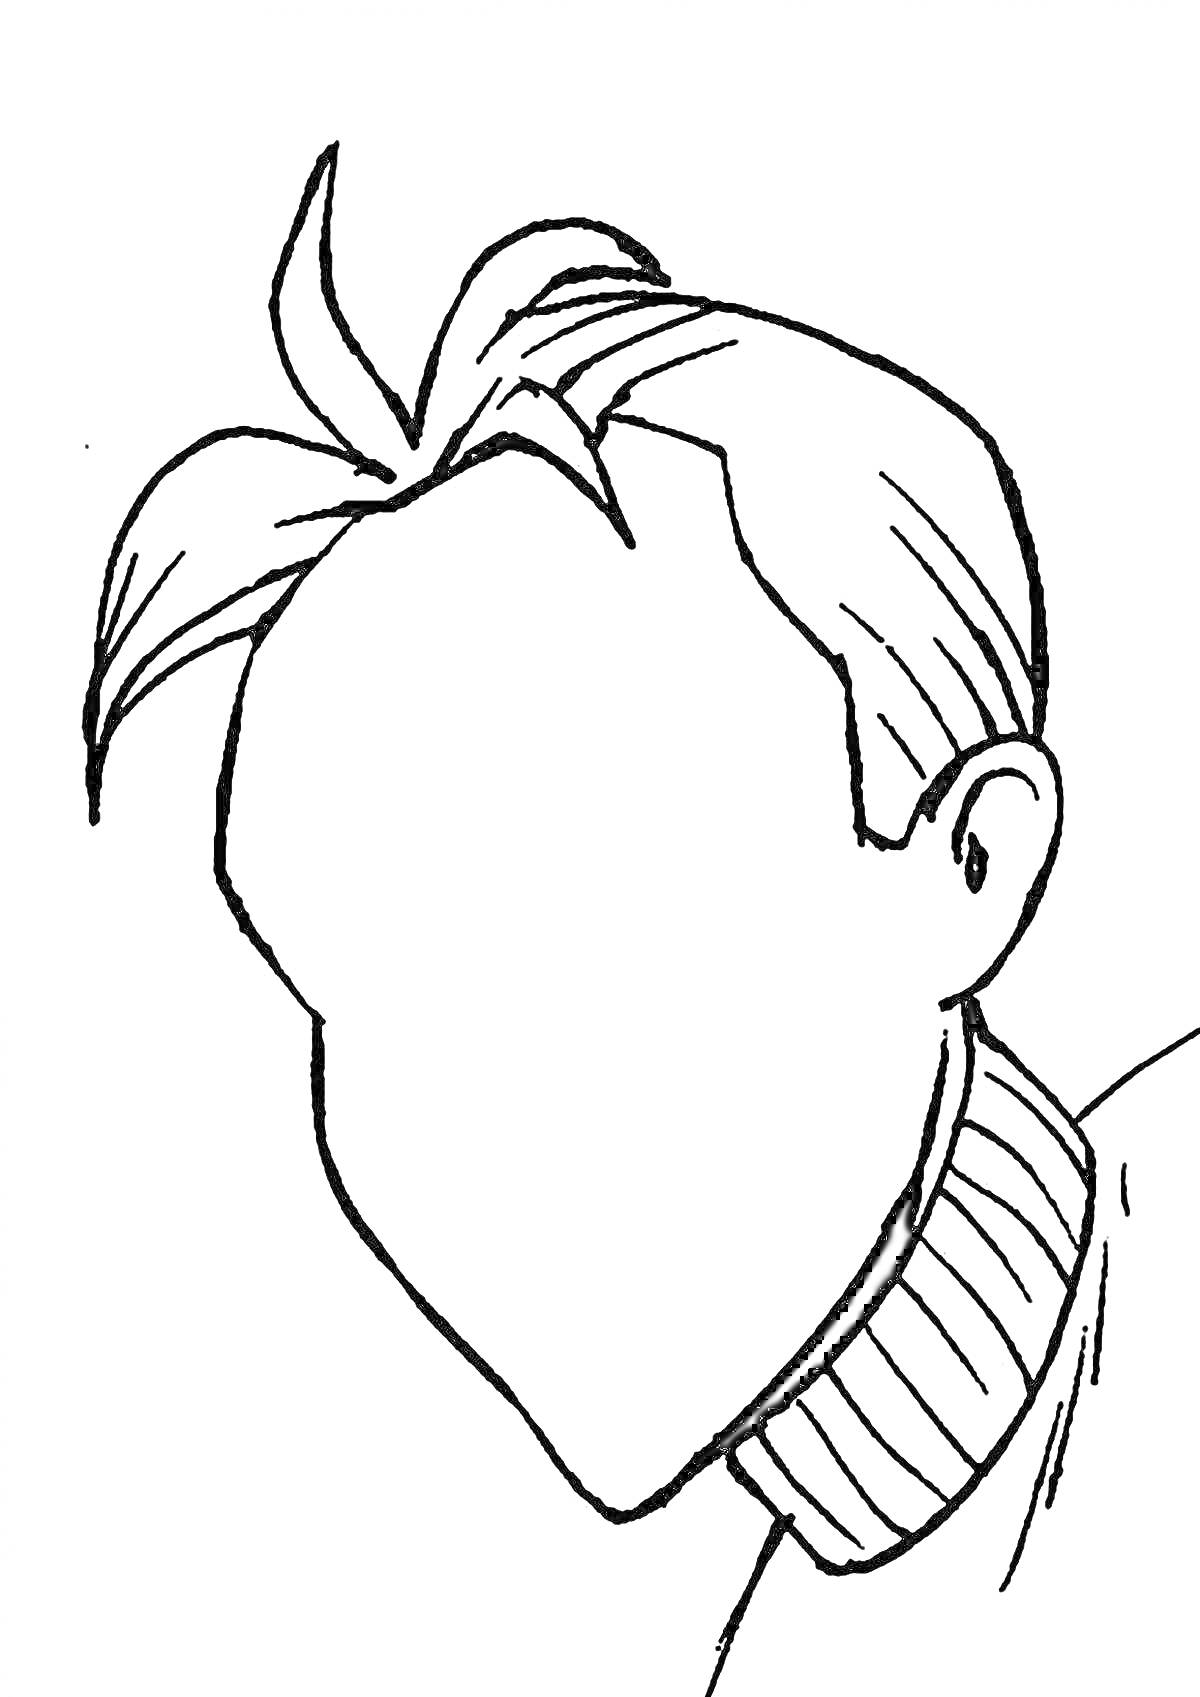 Раскраска Мужчина с прической, вид сбоку, волосы зачесаны назад, высокий воротник свитера